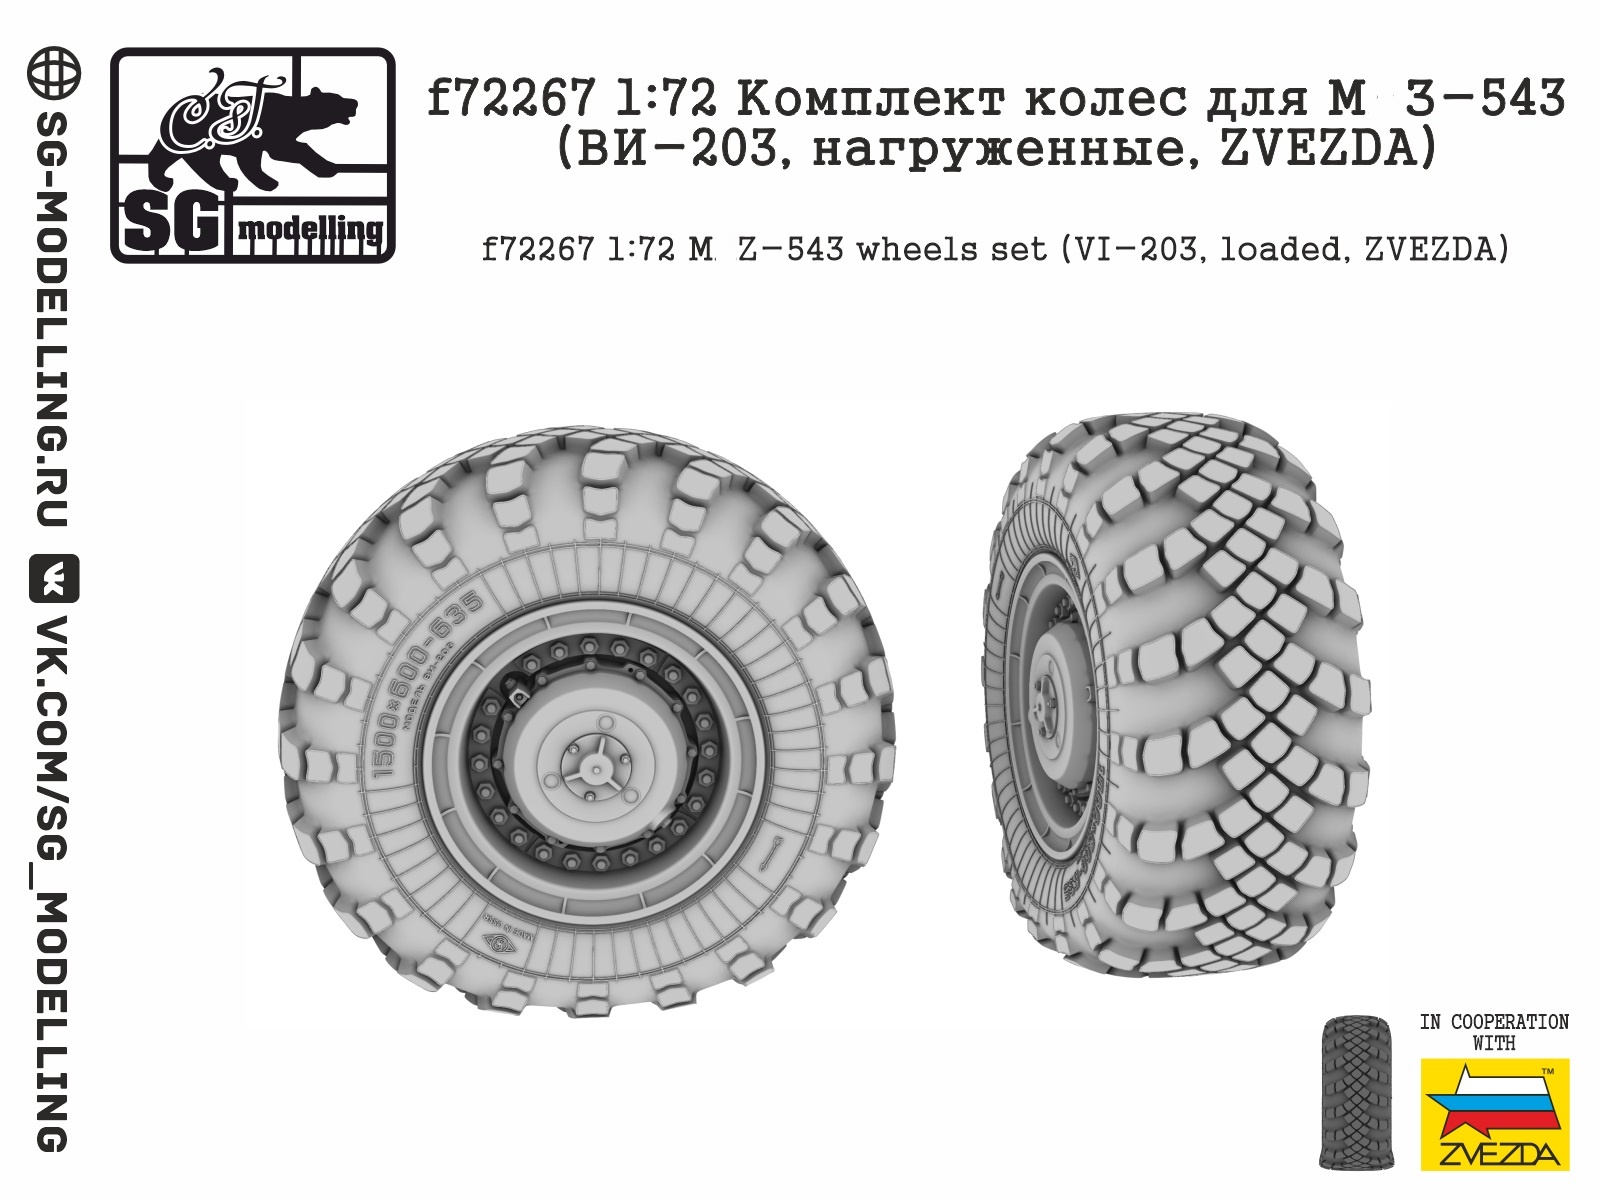 f72267  дополнения из смолы  Комплект колес для М@З-543 (ВИ-203, нагруженные, ZVEZDA)  (1:72)